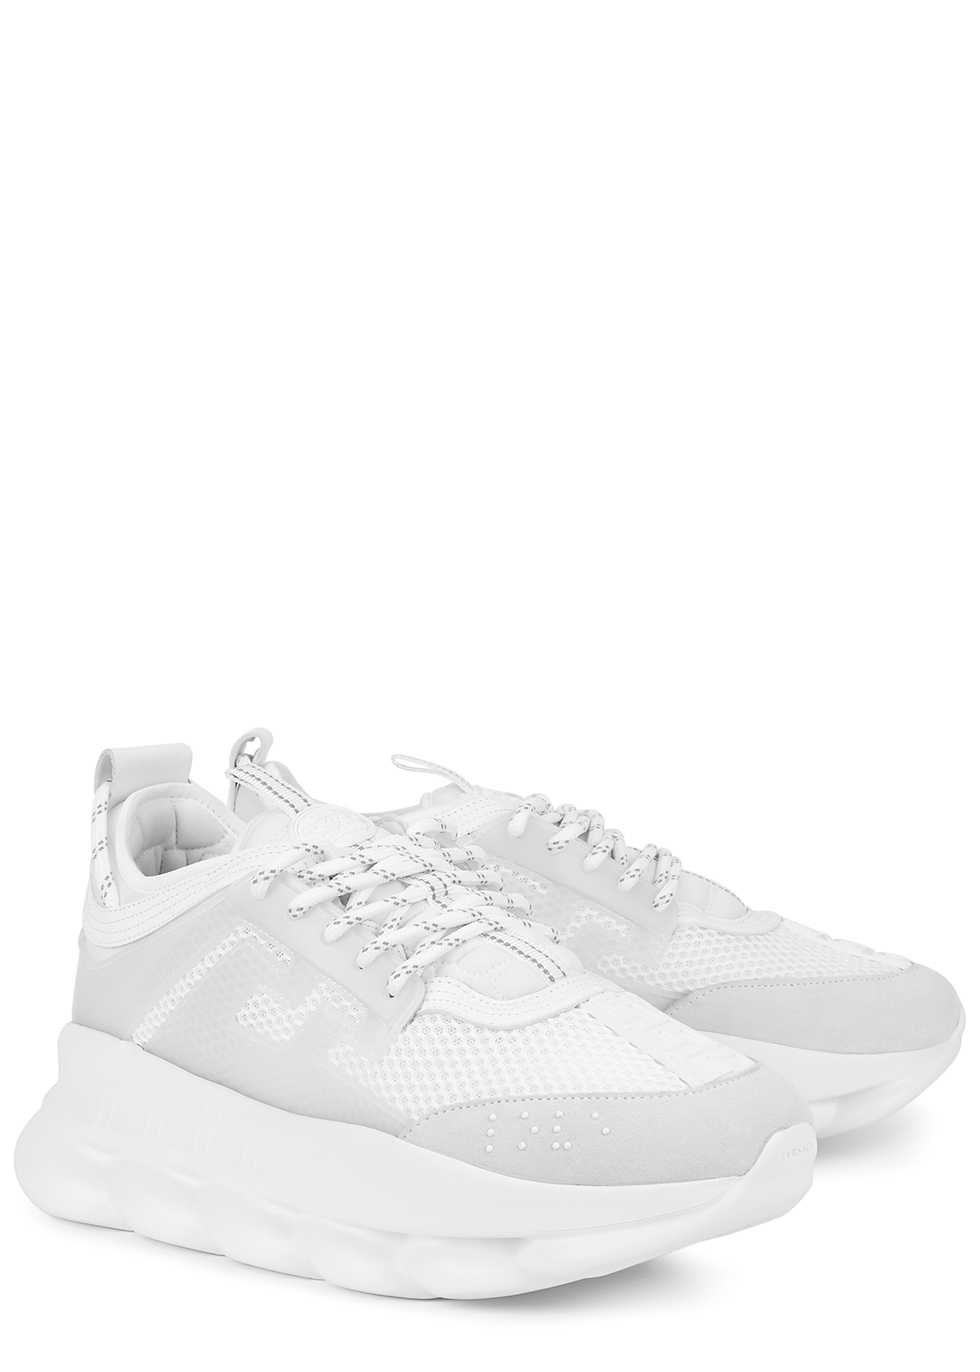 white mesh tennis shoes